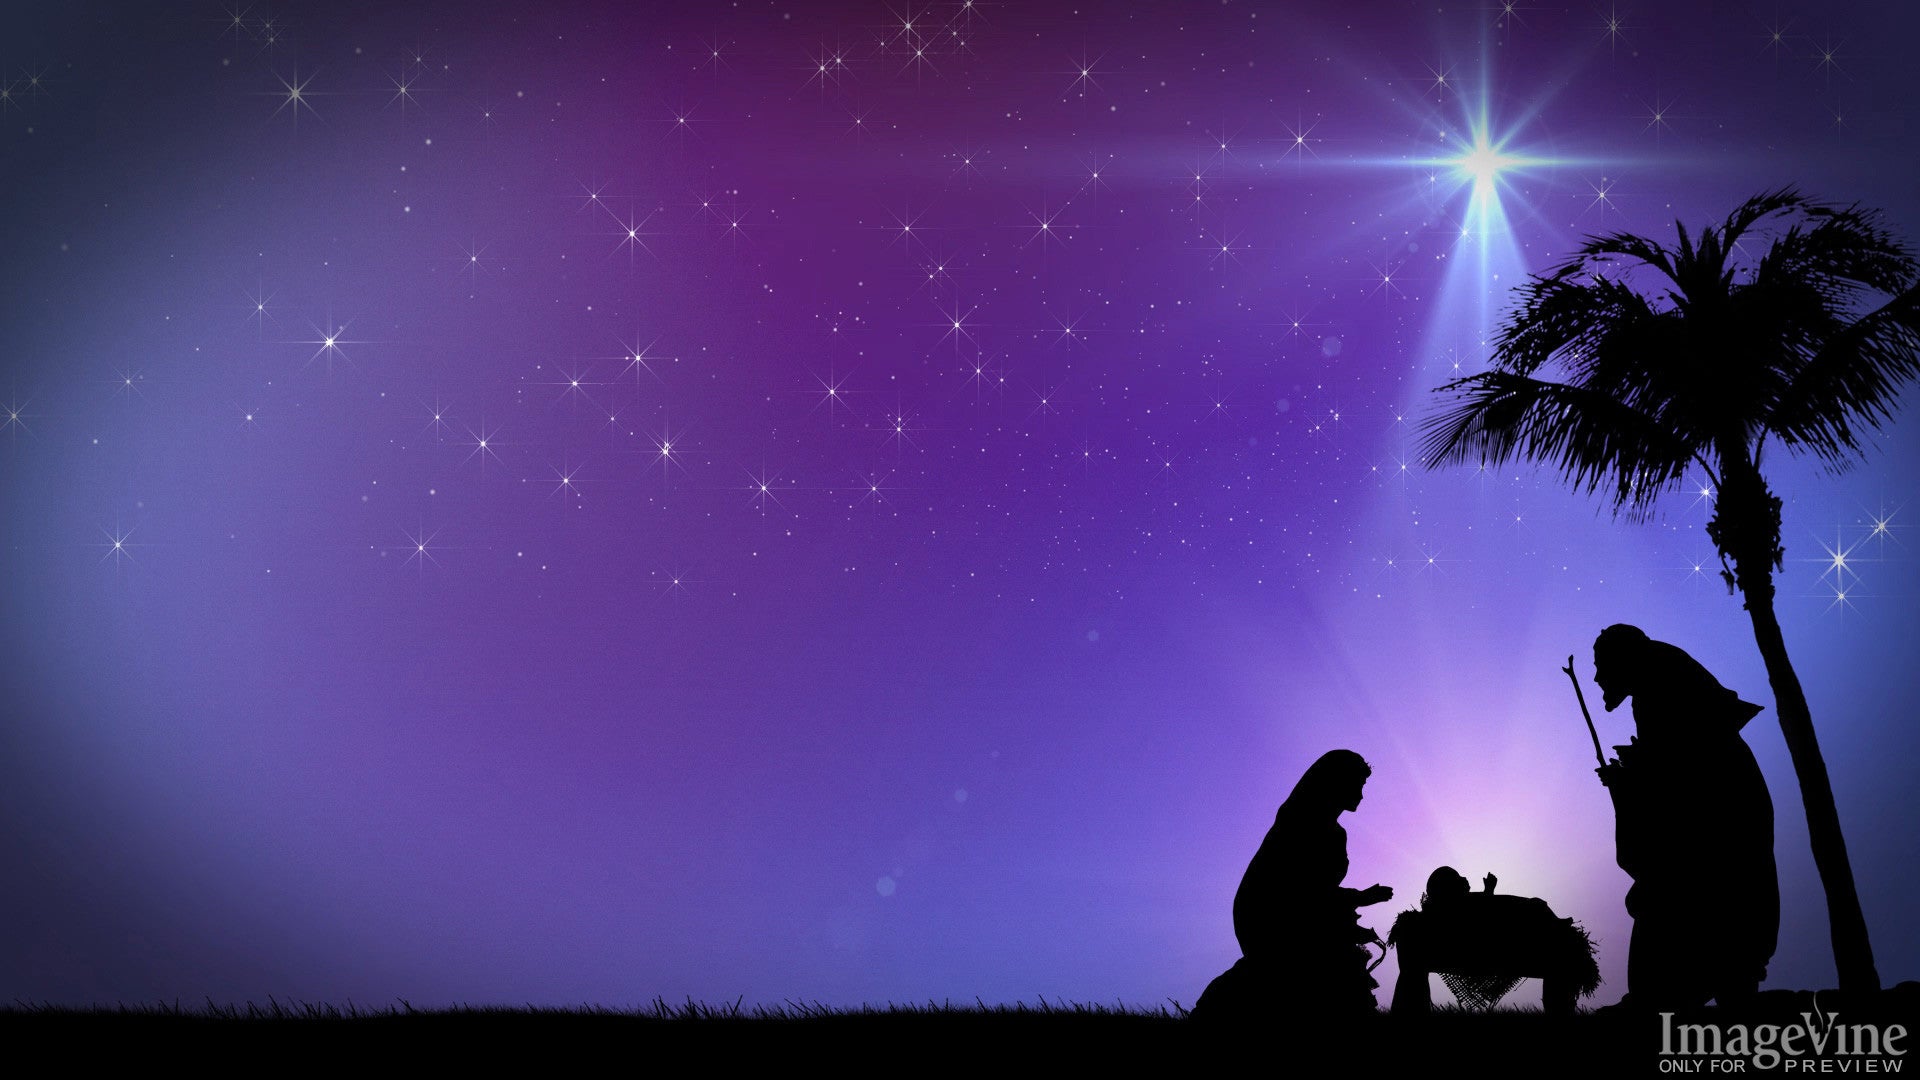 Cùng thưởng thức không khí noel ấm áp và lộng lẫy với hình nền đêm Giáng sinh tuyệt đẹp từ ImageVine PowerPoint Nôi Thánh. Hãy cùng khám phá vẻ đẹp thần tiên của lễ hội noel trong những hình ảnh đầy màu sắc và lung linh này.